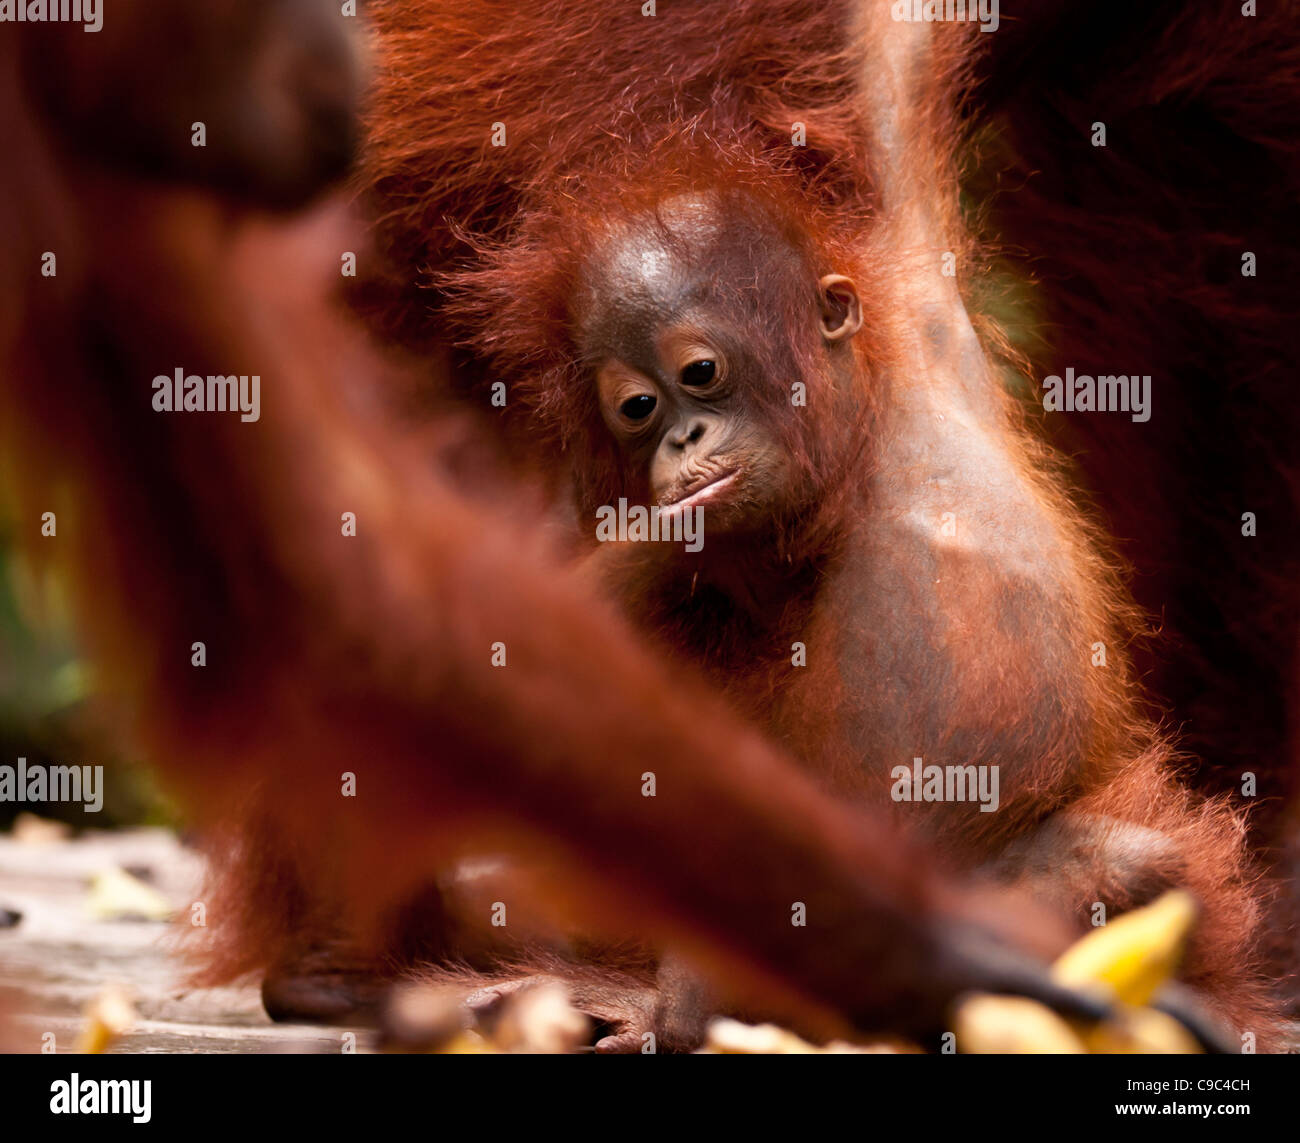 Very young orangutan behind adult limbs. Stock Photo